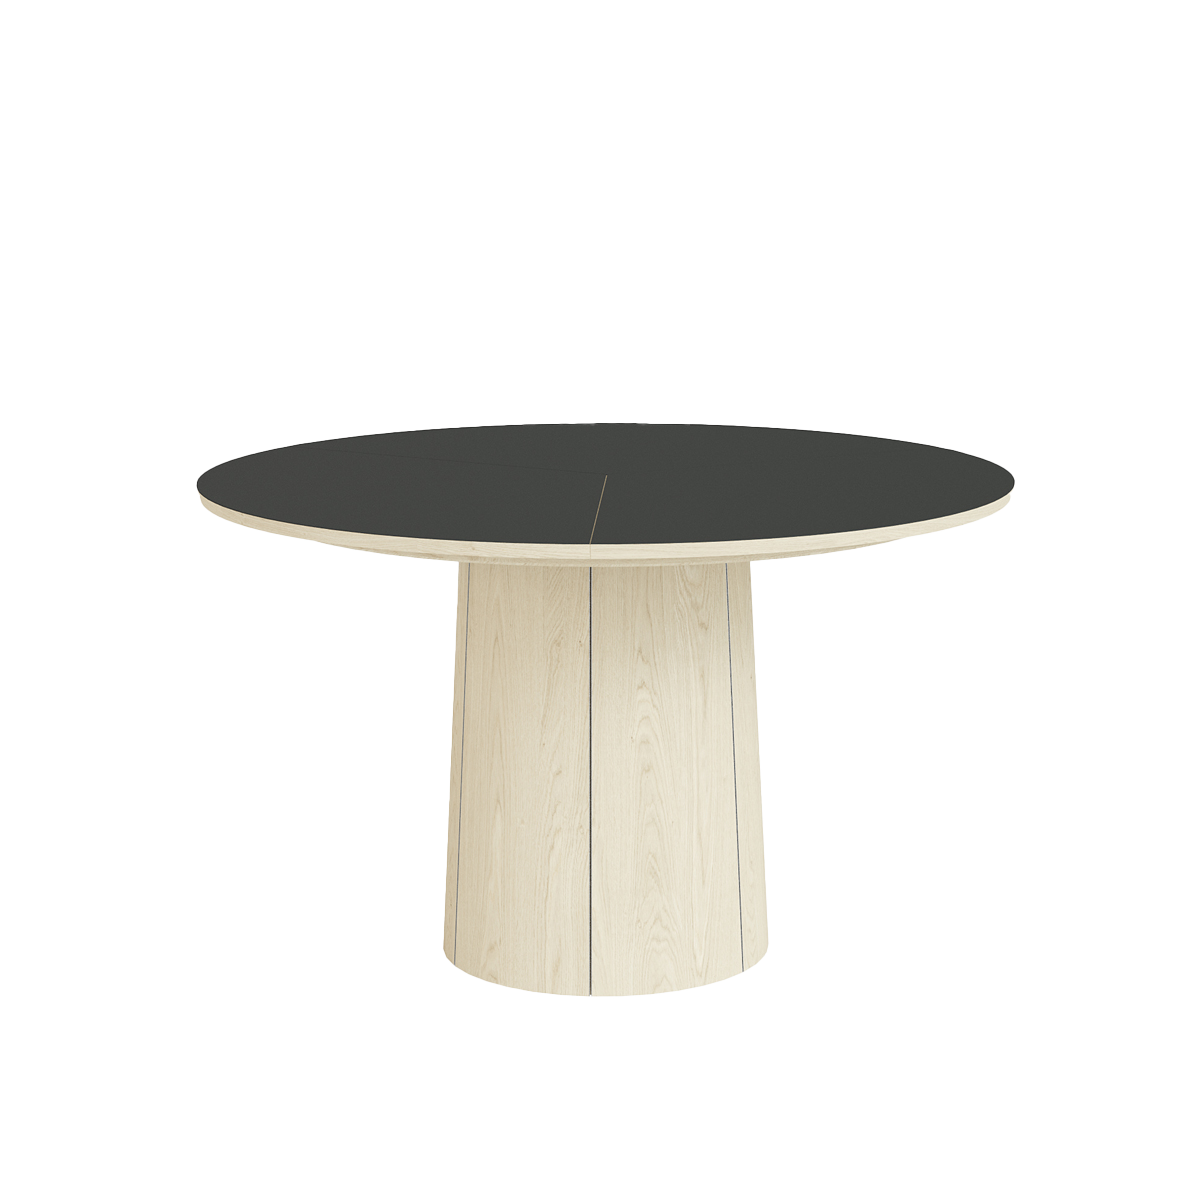 SM 33 spisebord fra Skovby med top i sort nano laminat og ben i hvidolieret eg